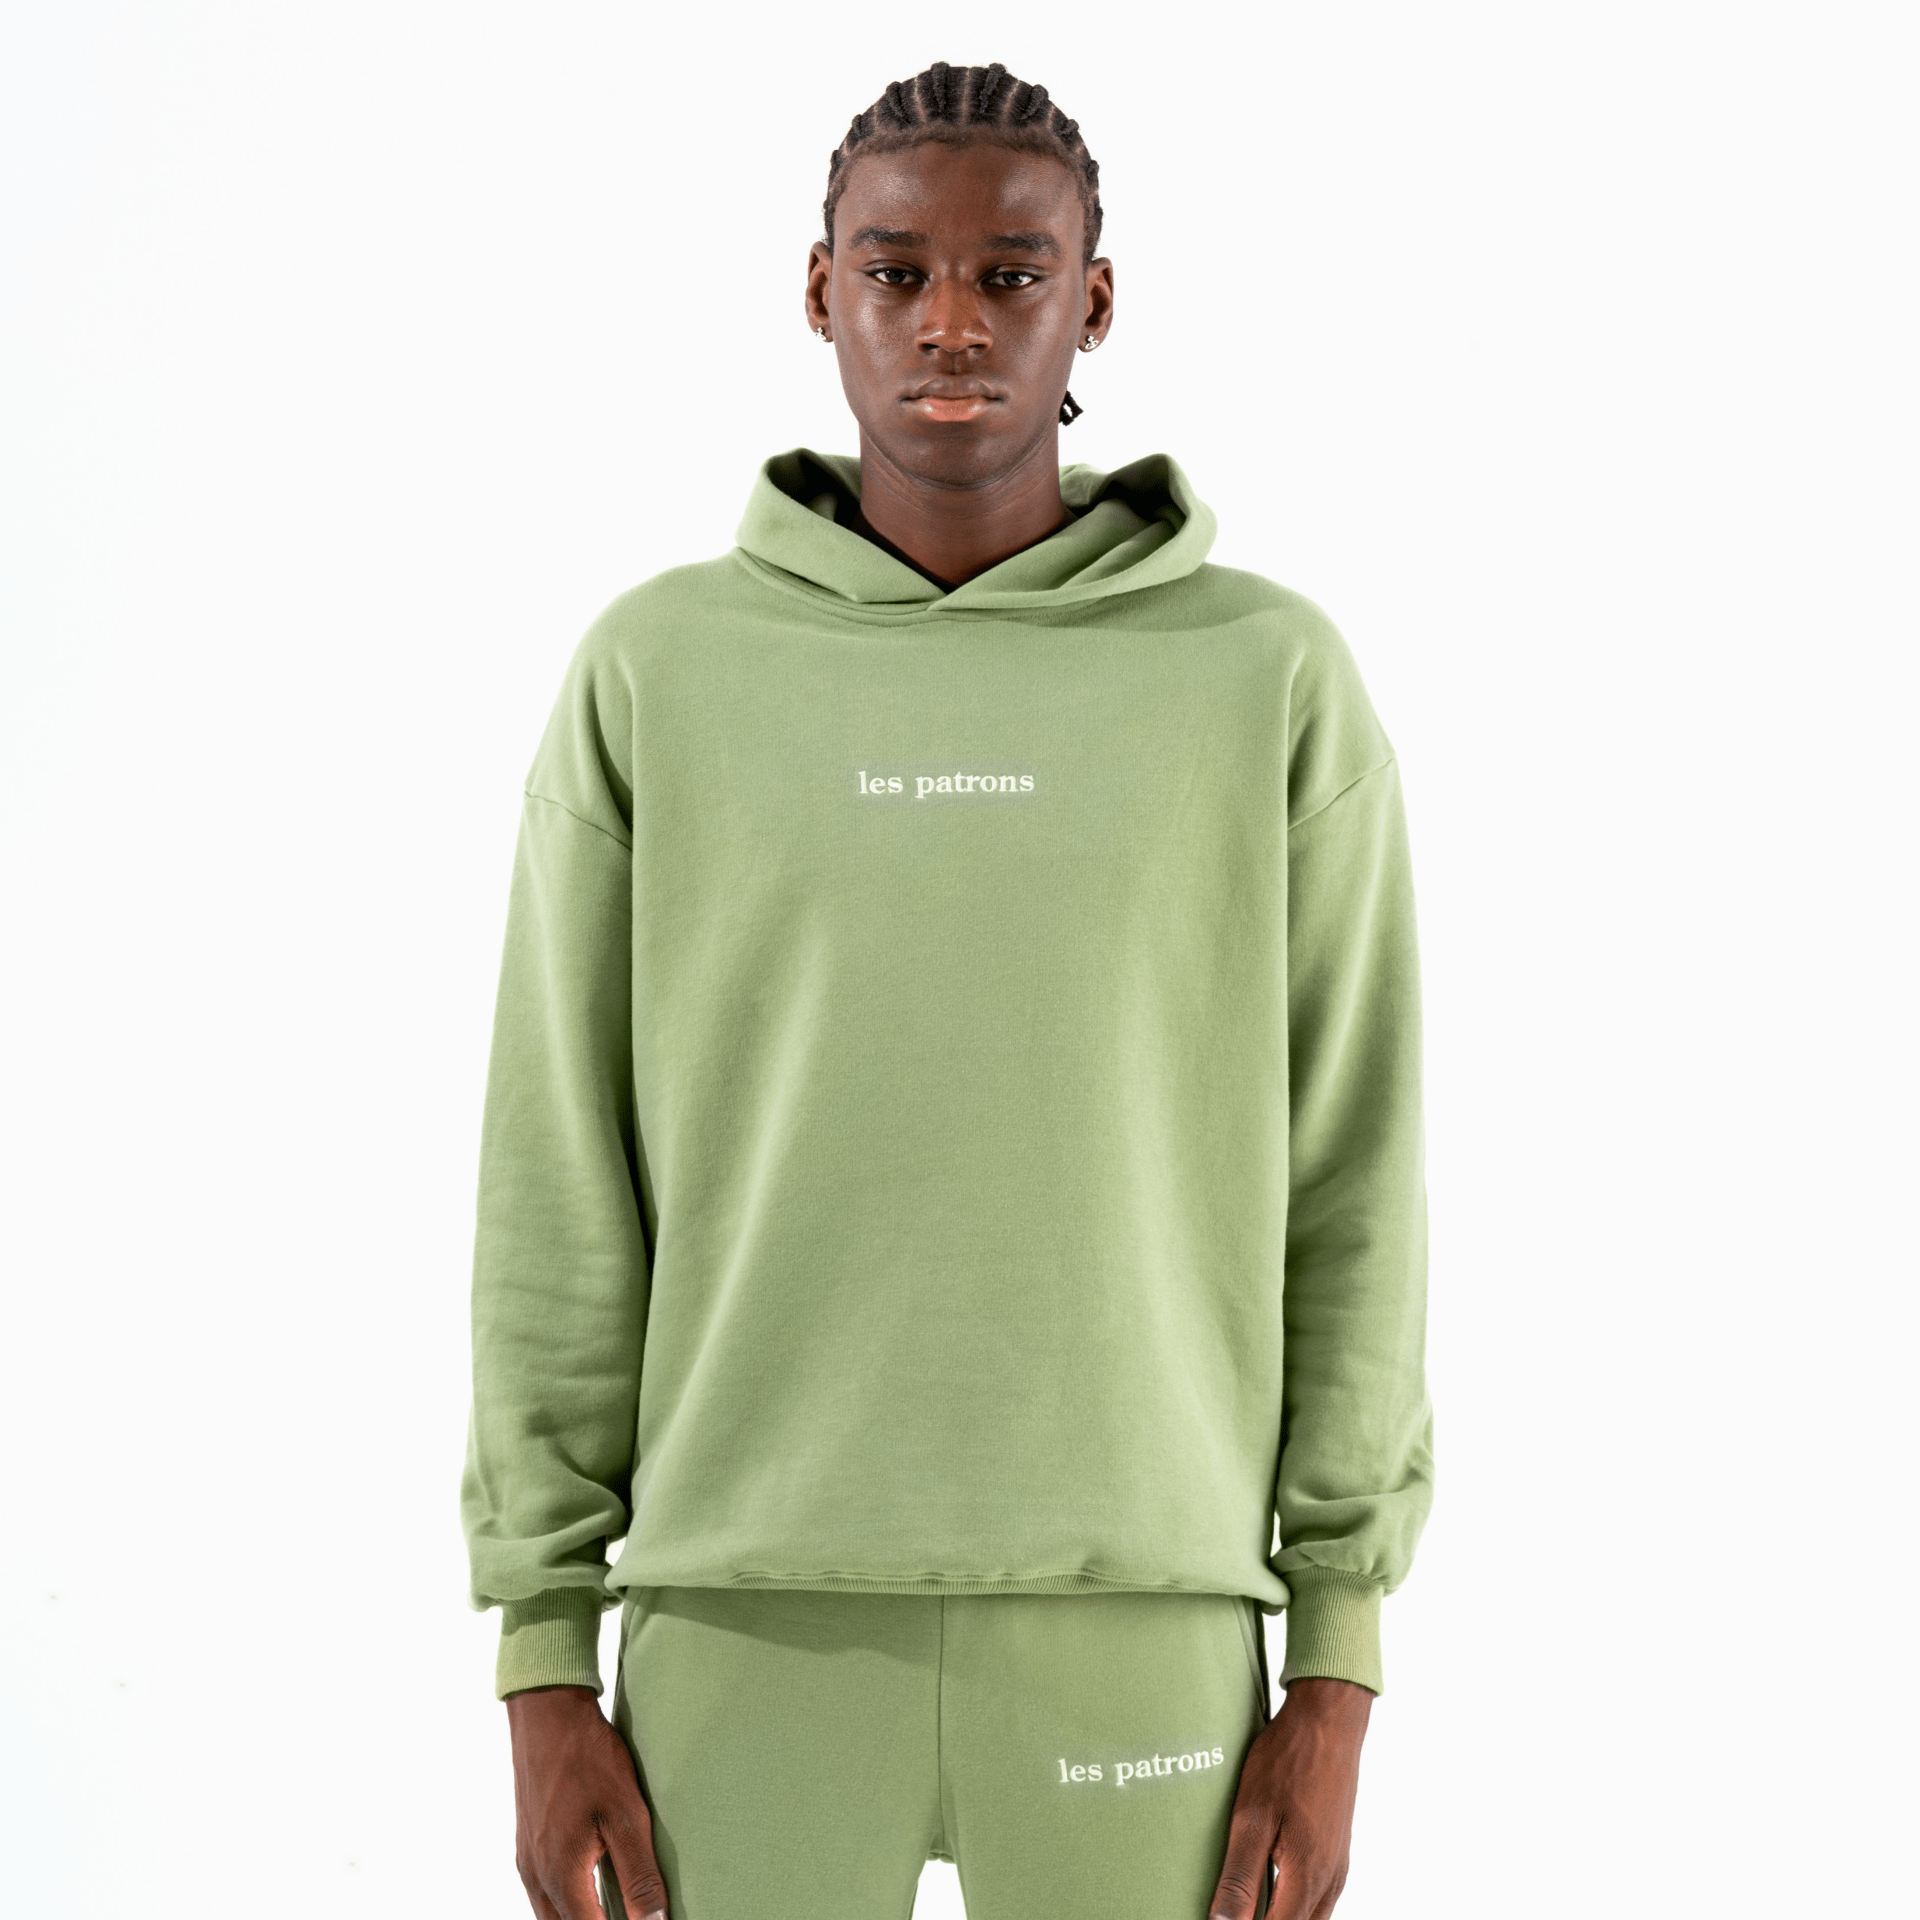 Les patrons luxury streetwear green sweatsuit hoodie